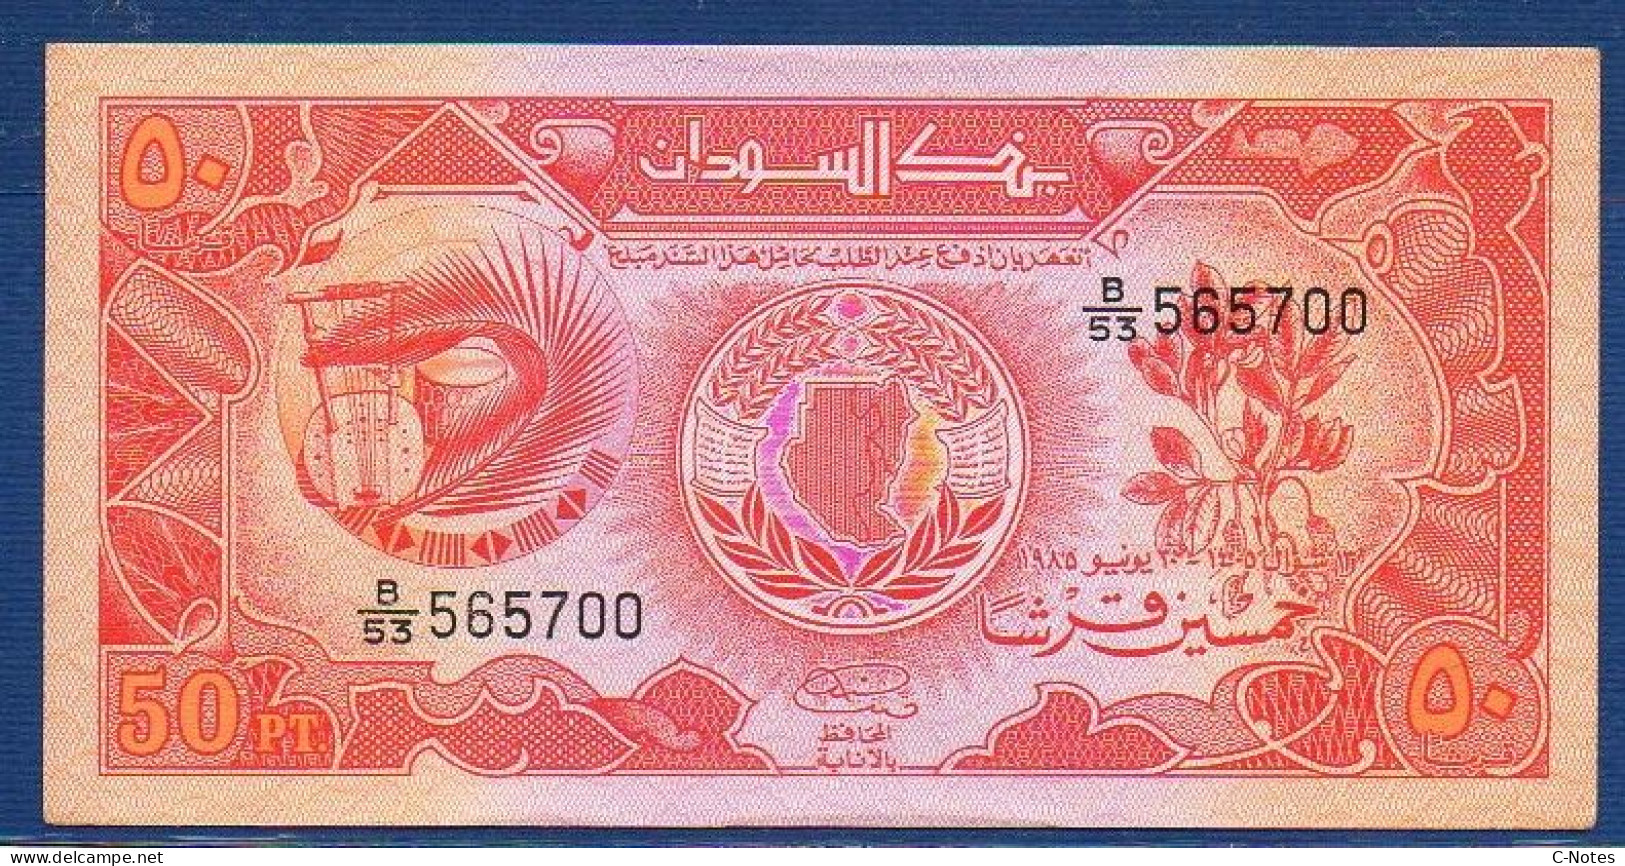 SUDAN - P.31 – 50 Piastres 1985 AUNC, S/n B/53 565700 - Sudan